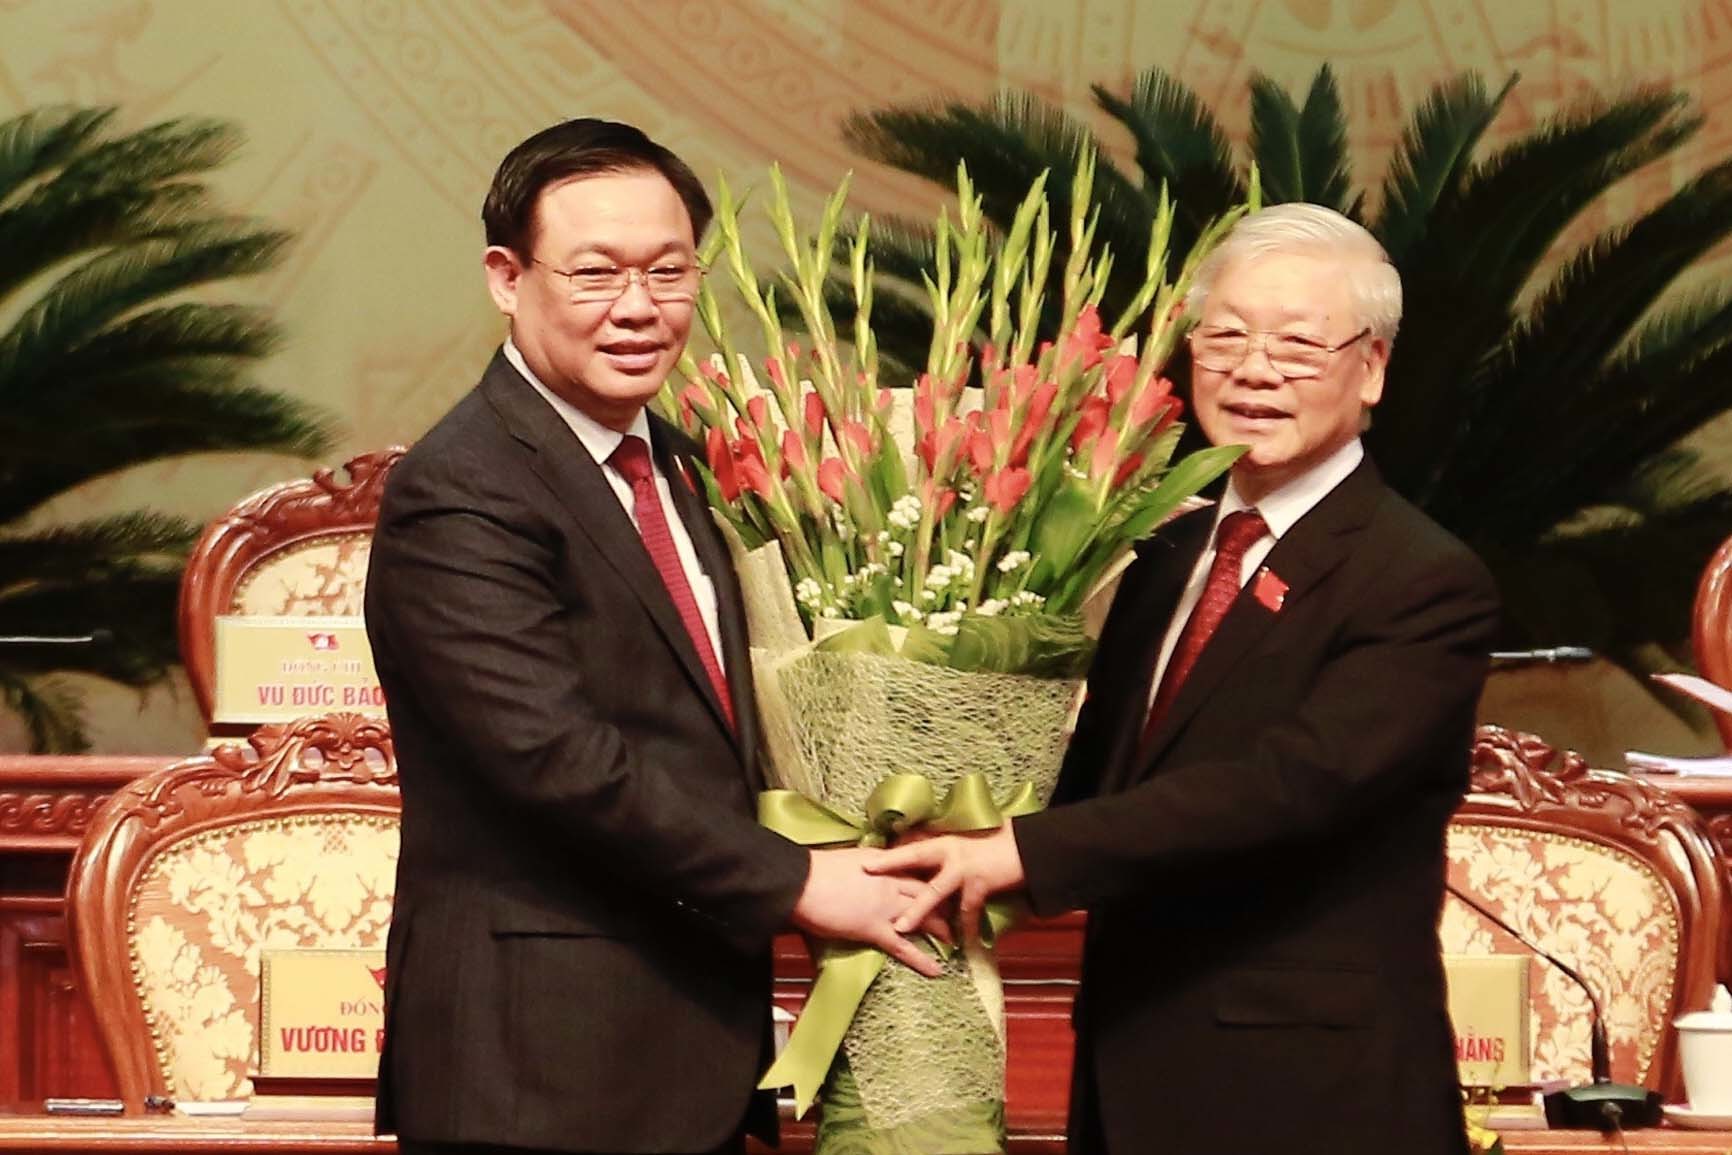 Tổng Bí thư, Chủ tịch nước: Hà Nội chưa bao giờ có tầm vóc và cơ hội phát triển như bây giờ